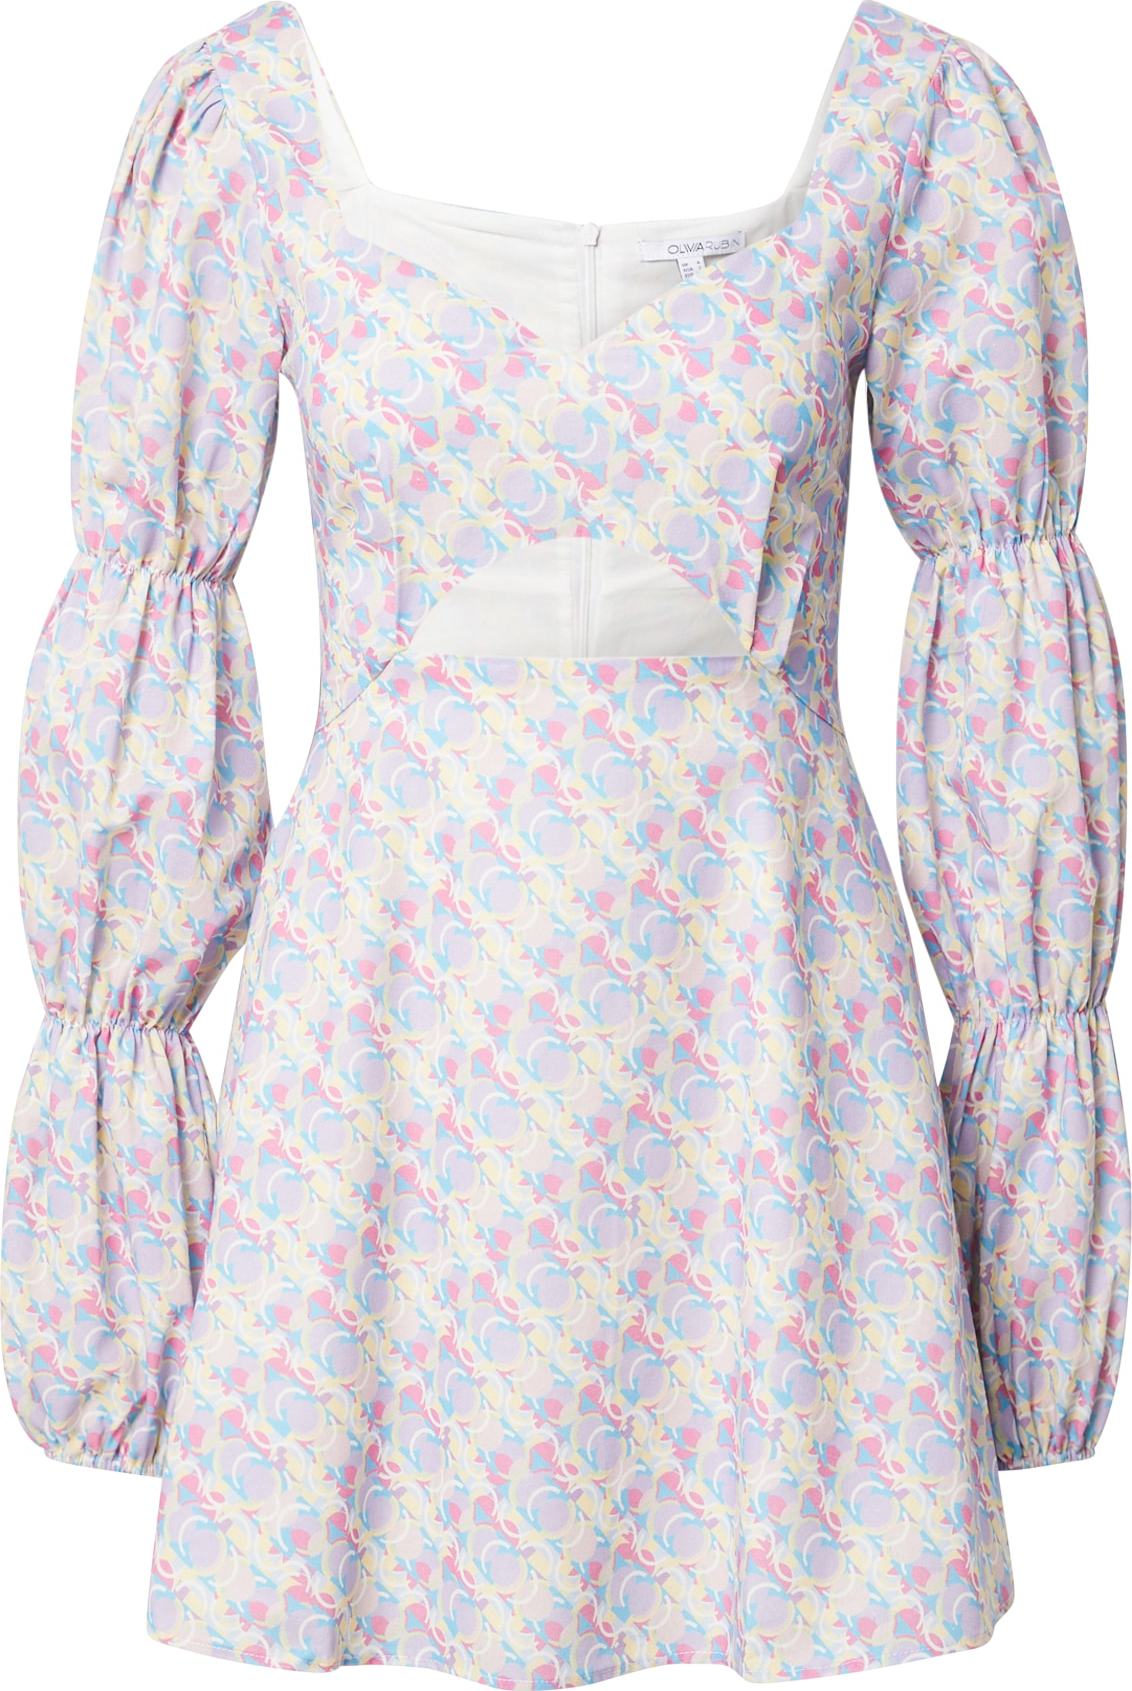 Olivia Rubin Letní šaty 'ELOISE' světlemodrá / světle žlutá / pastelová fialová / pink